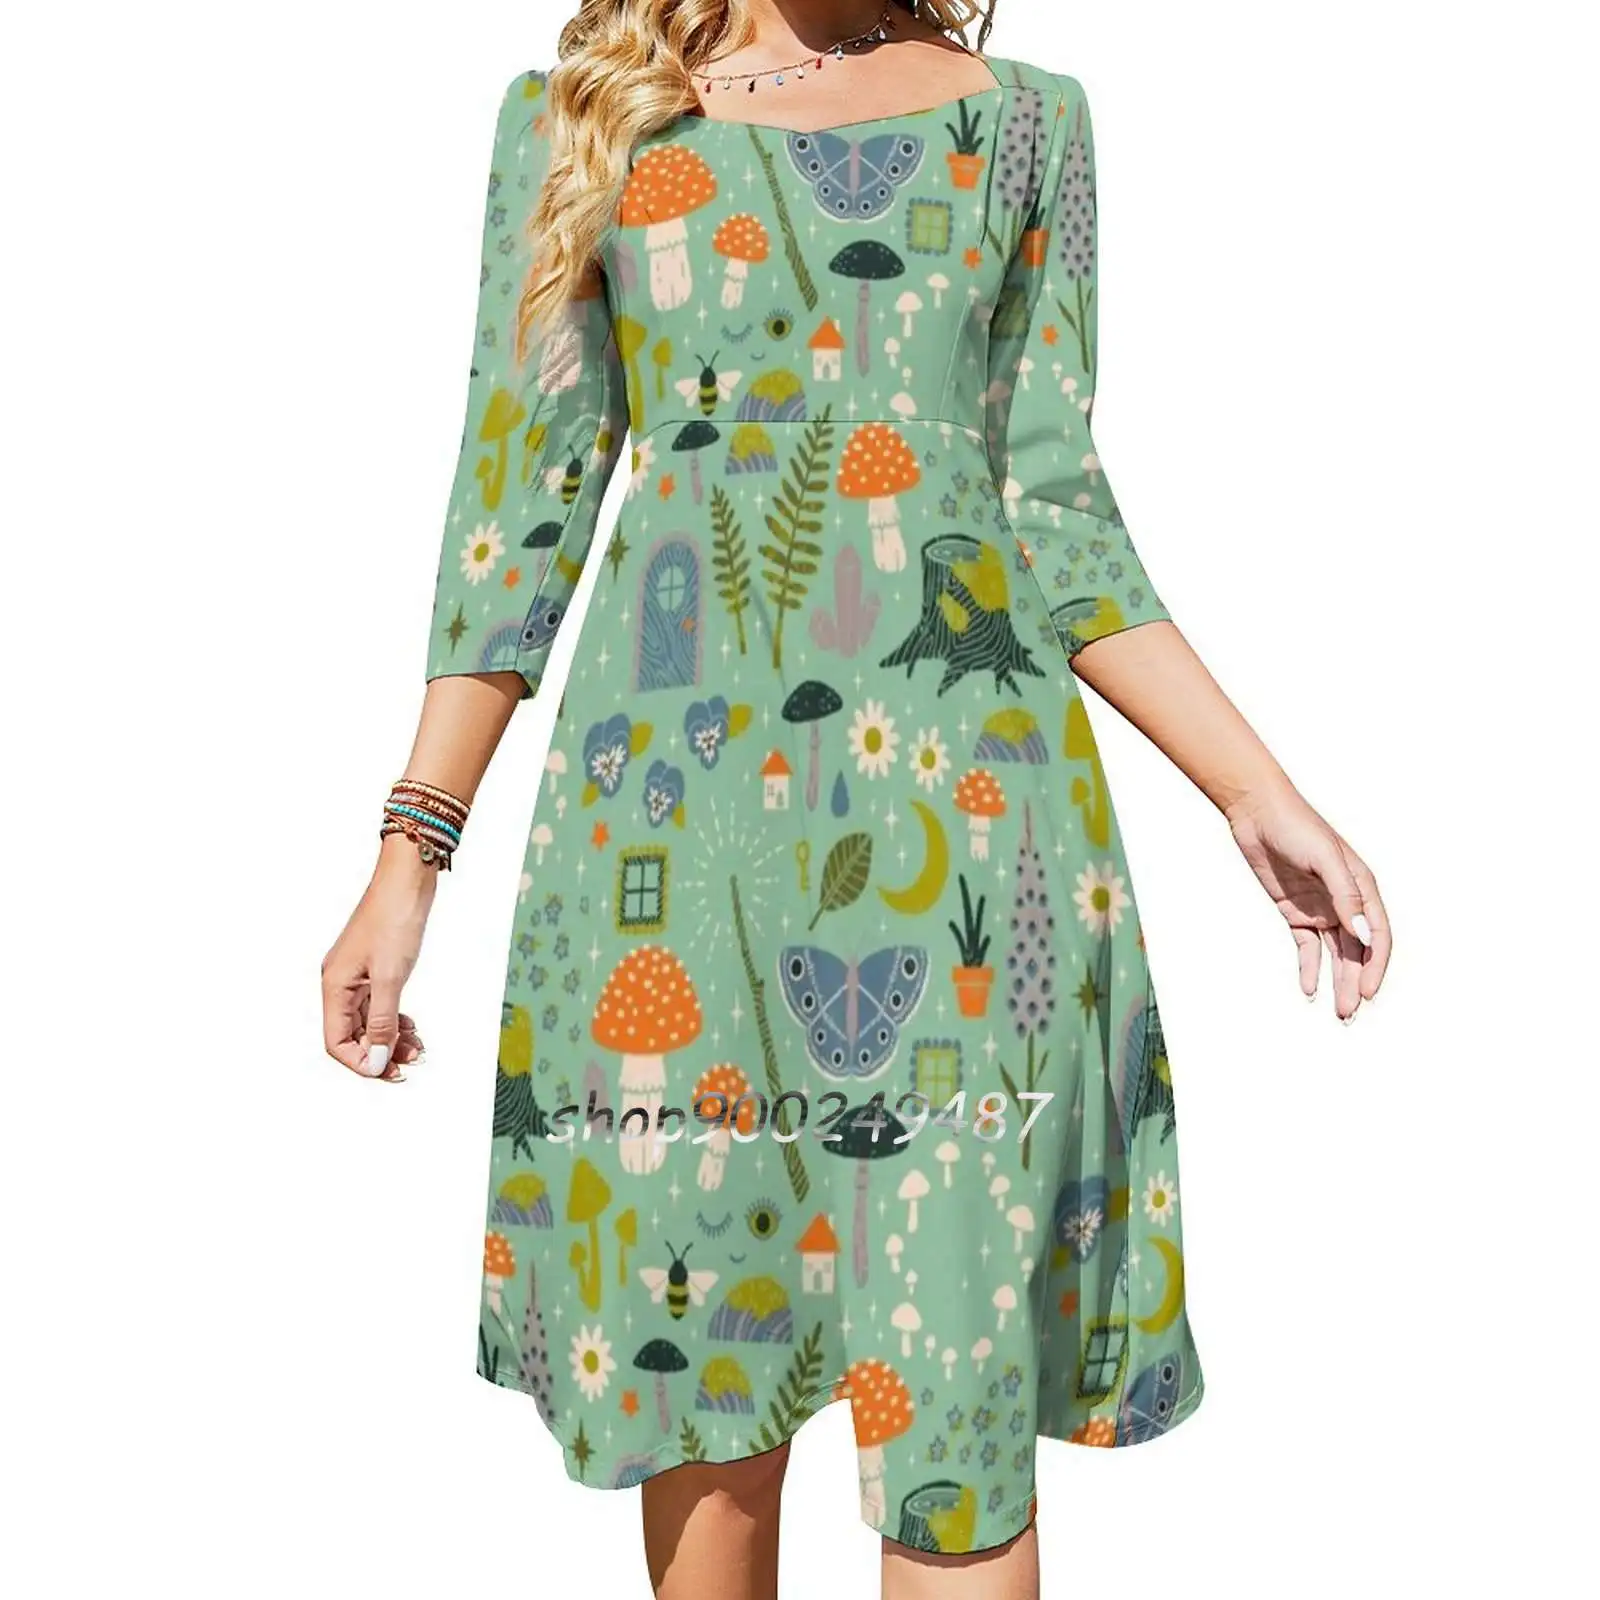 

Расклешенное платье феи сада с сердечком и узлом модное дизайнерское свободное платье большого размера с рисунком мятного пастельного цве...